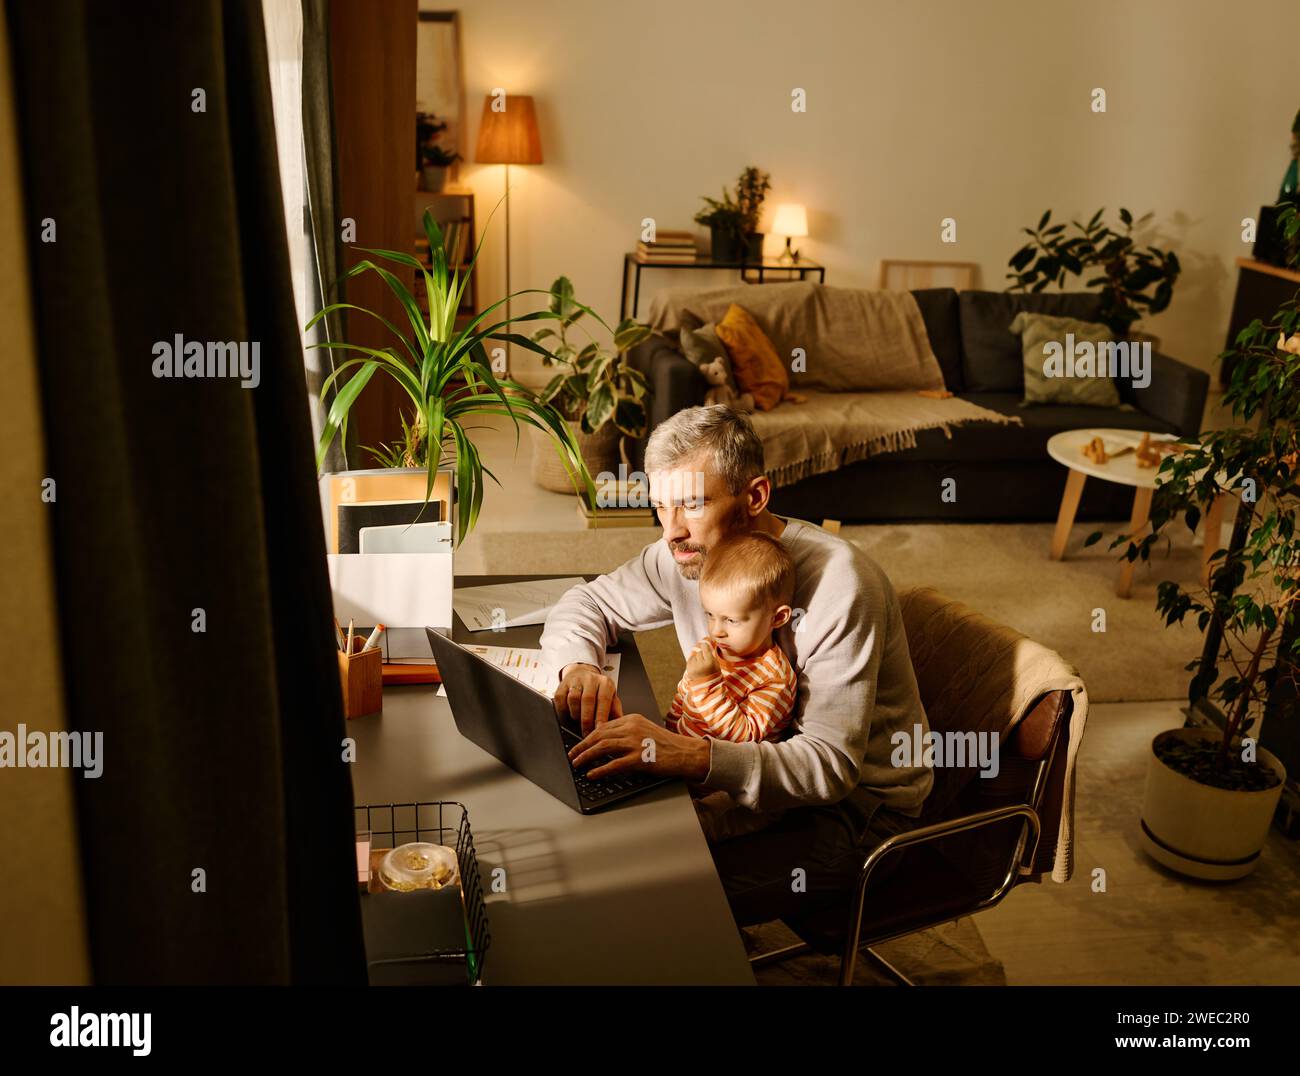 Beschäftigter männlicher Solopreneur oder Manager und sein kleiner Sohn schauten auf den Laptop-Bildschirm, während er nach dem Frühstück am Tisch im Wohnzimmer saß Stockfoto